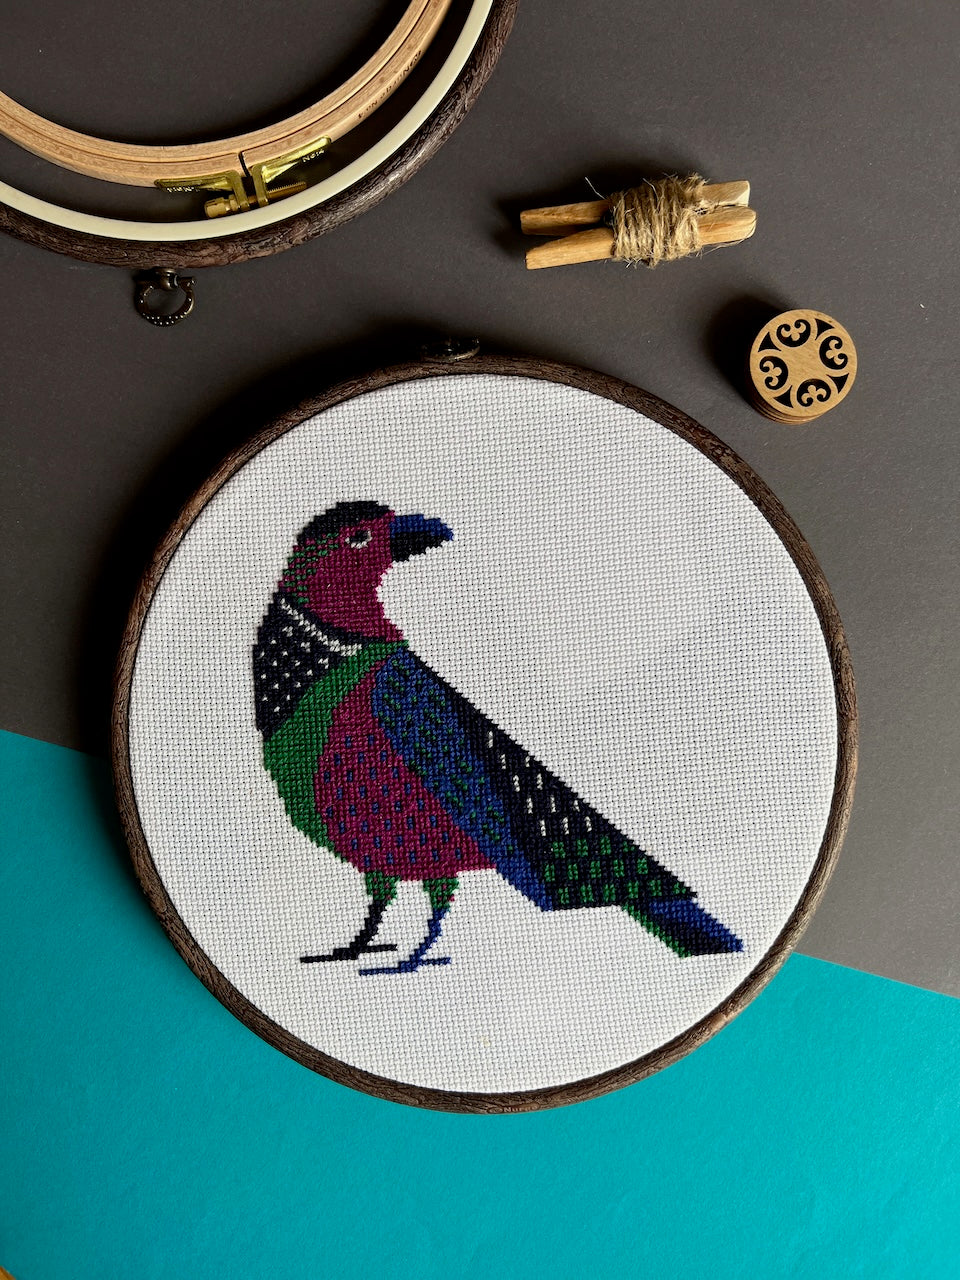 Raven - cross stitch pattern